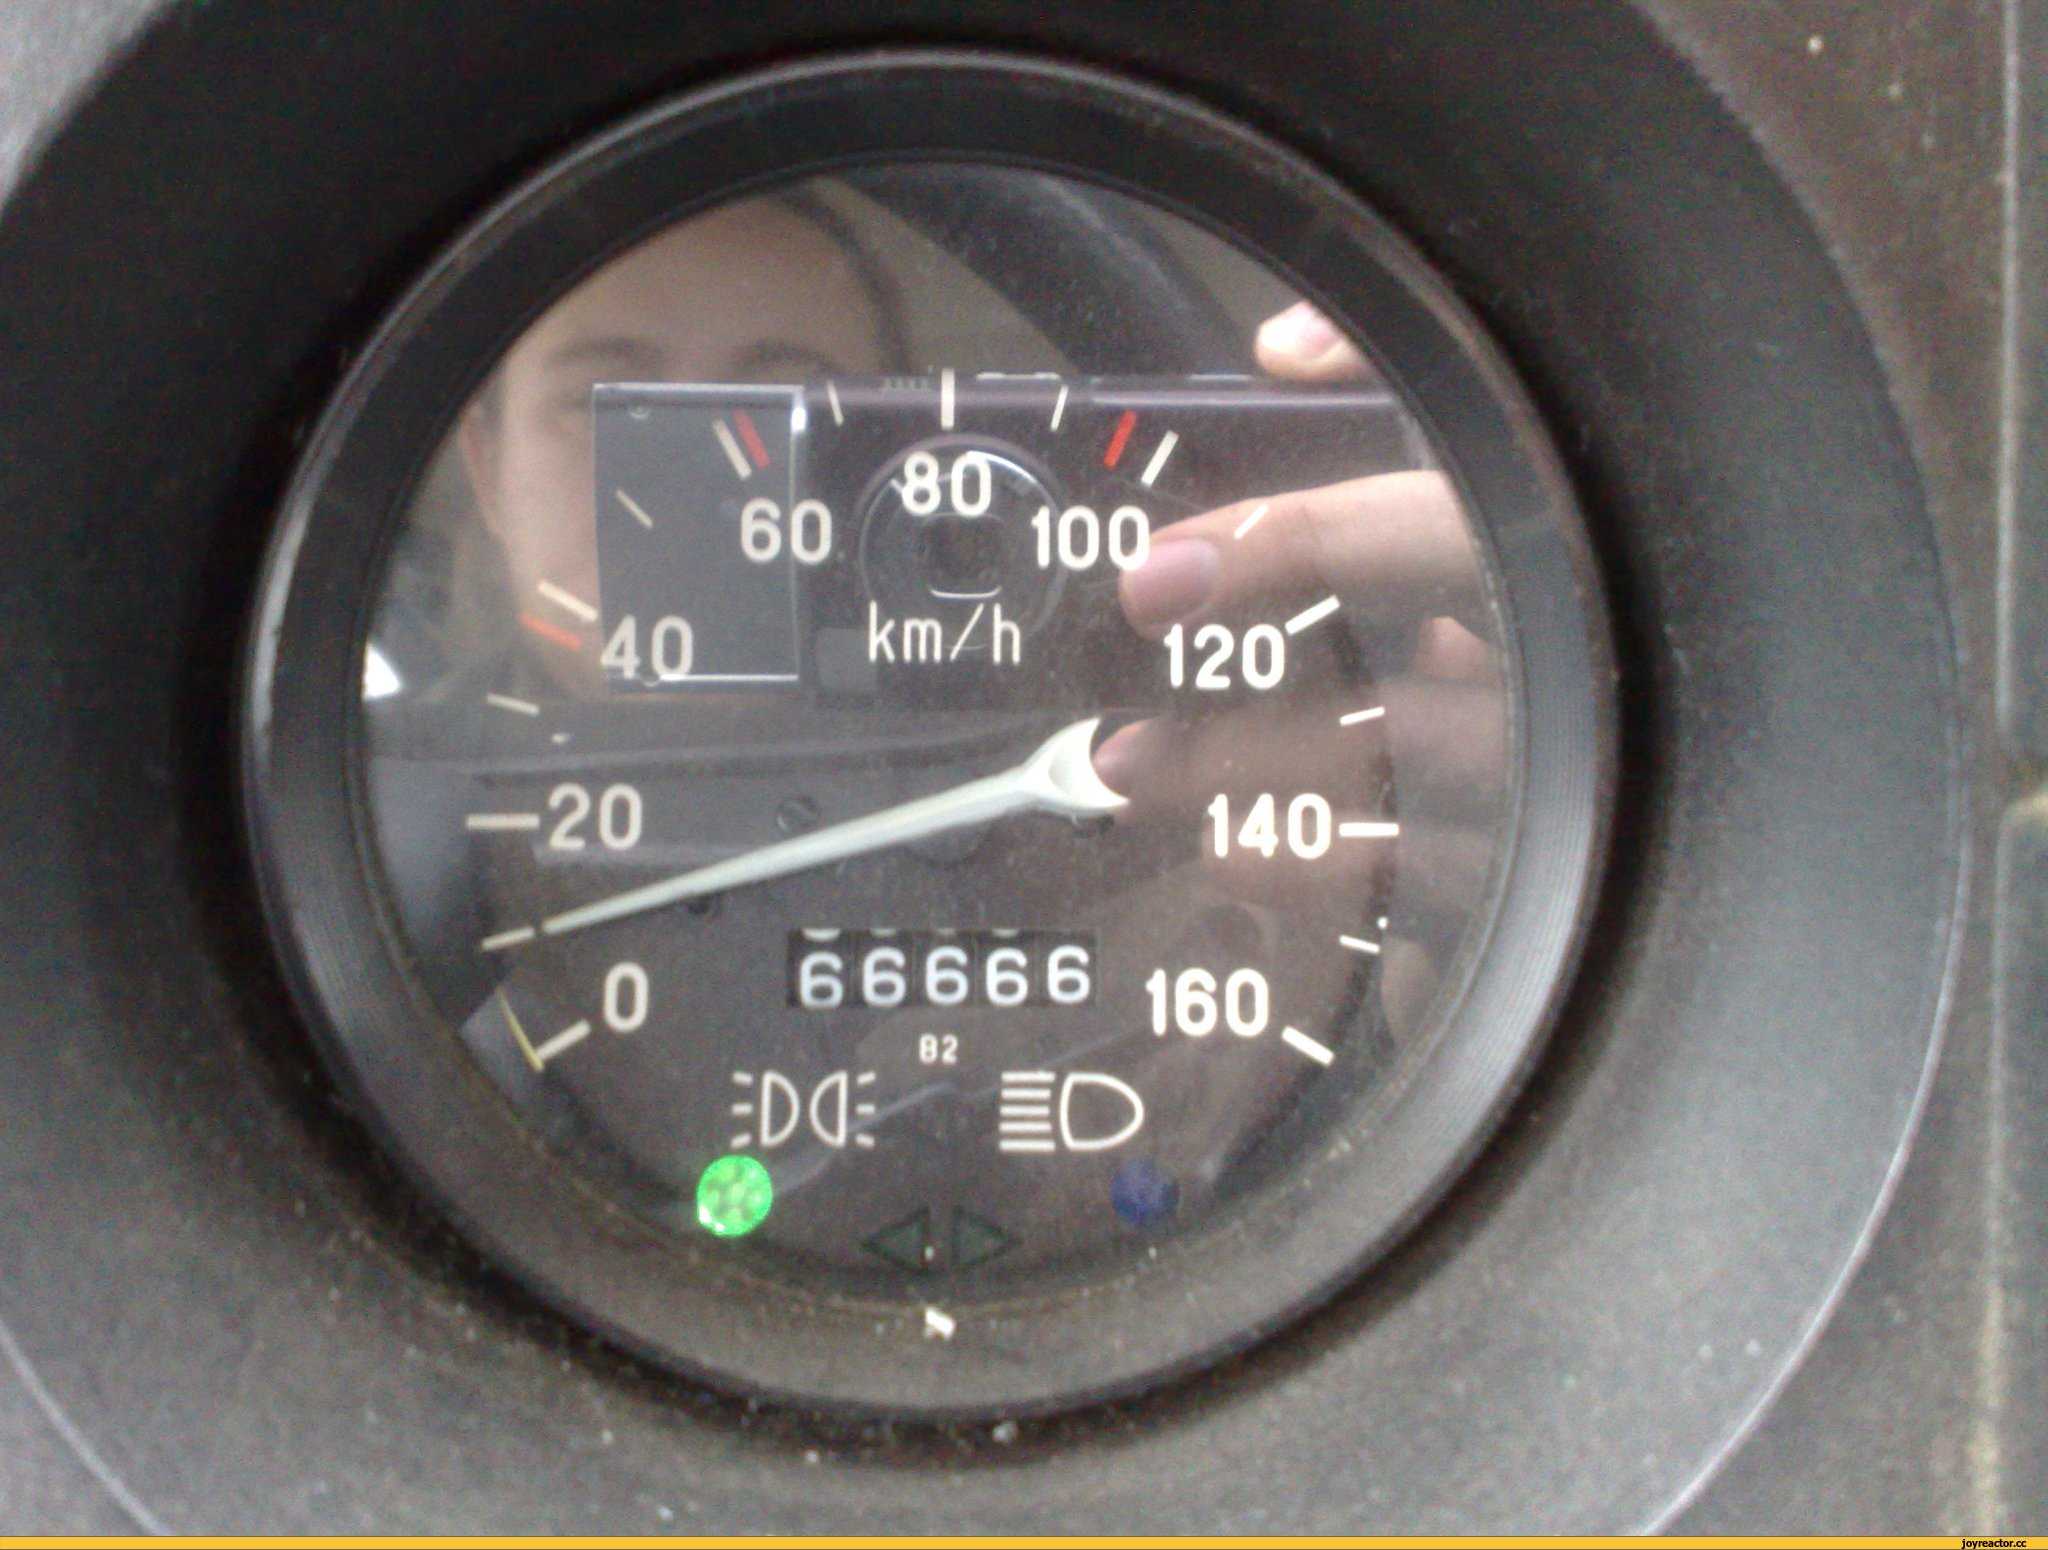 Какую скорость показывает спидометр автомобиля?